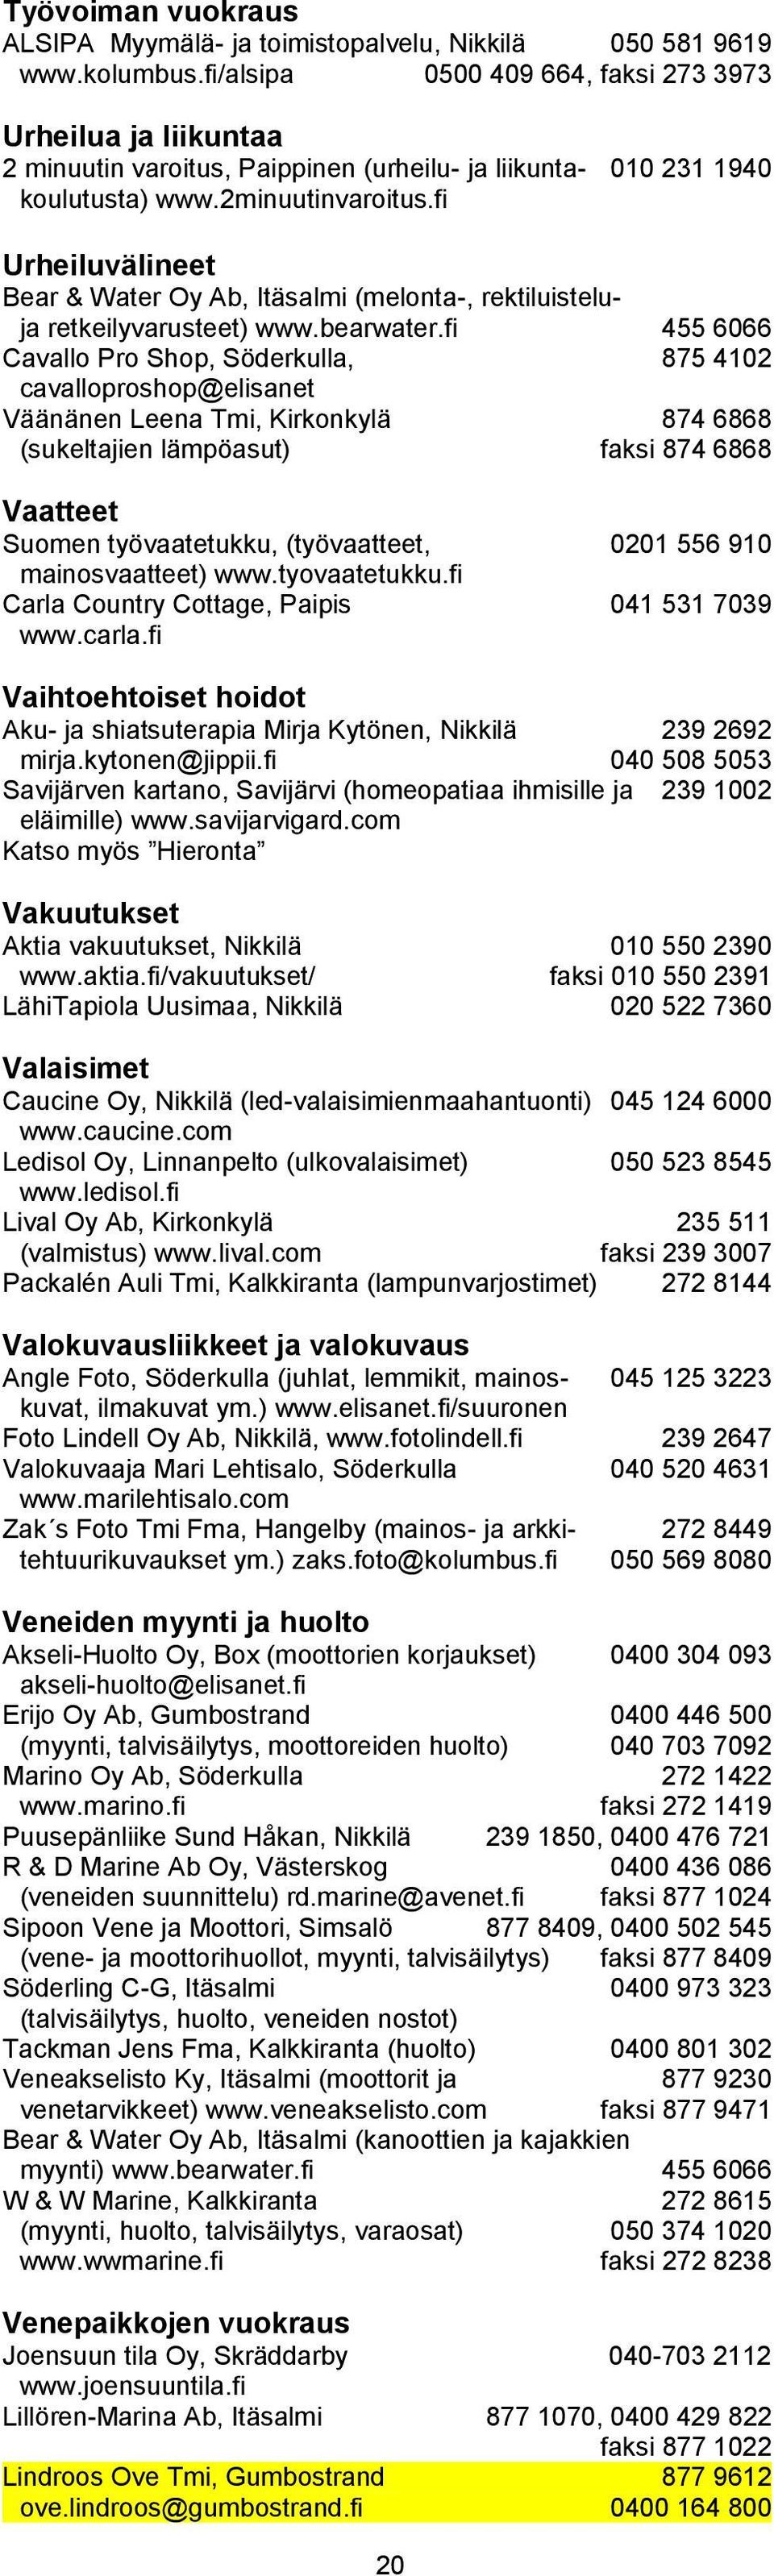 fi Urheiluvälineet Bear & Water Oy Ab, Itäsalmi (melonta-, rektiluisteluja retkeilyvarusteet) www.bearwater.